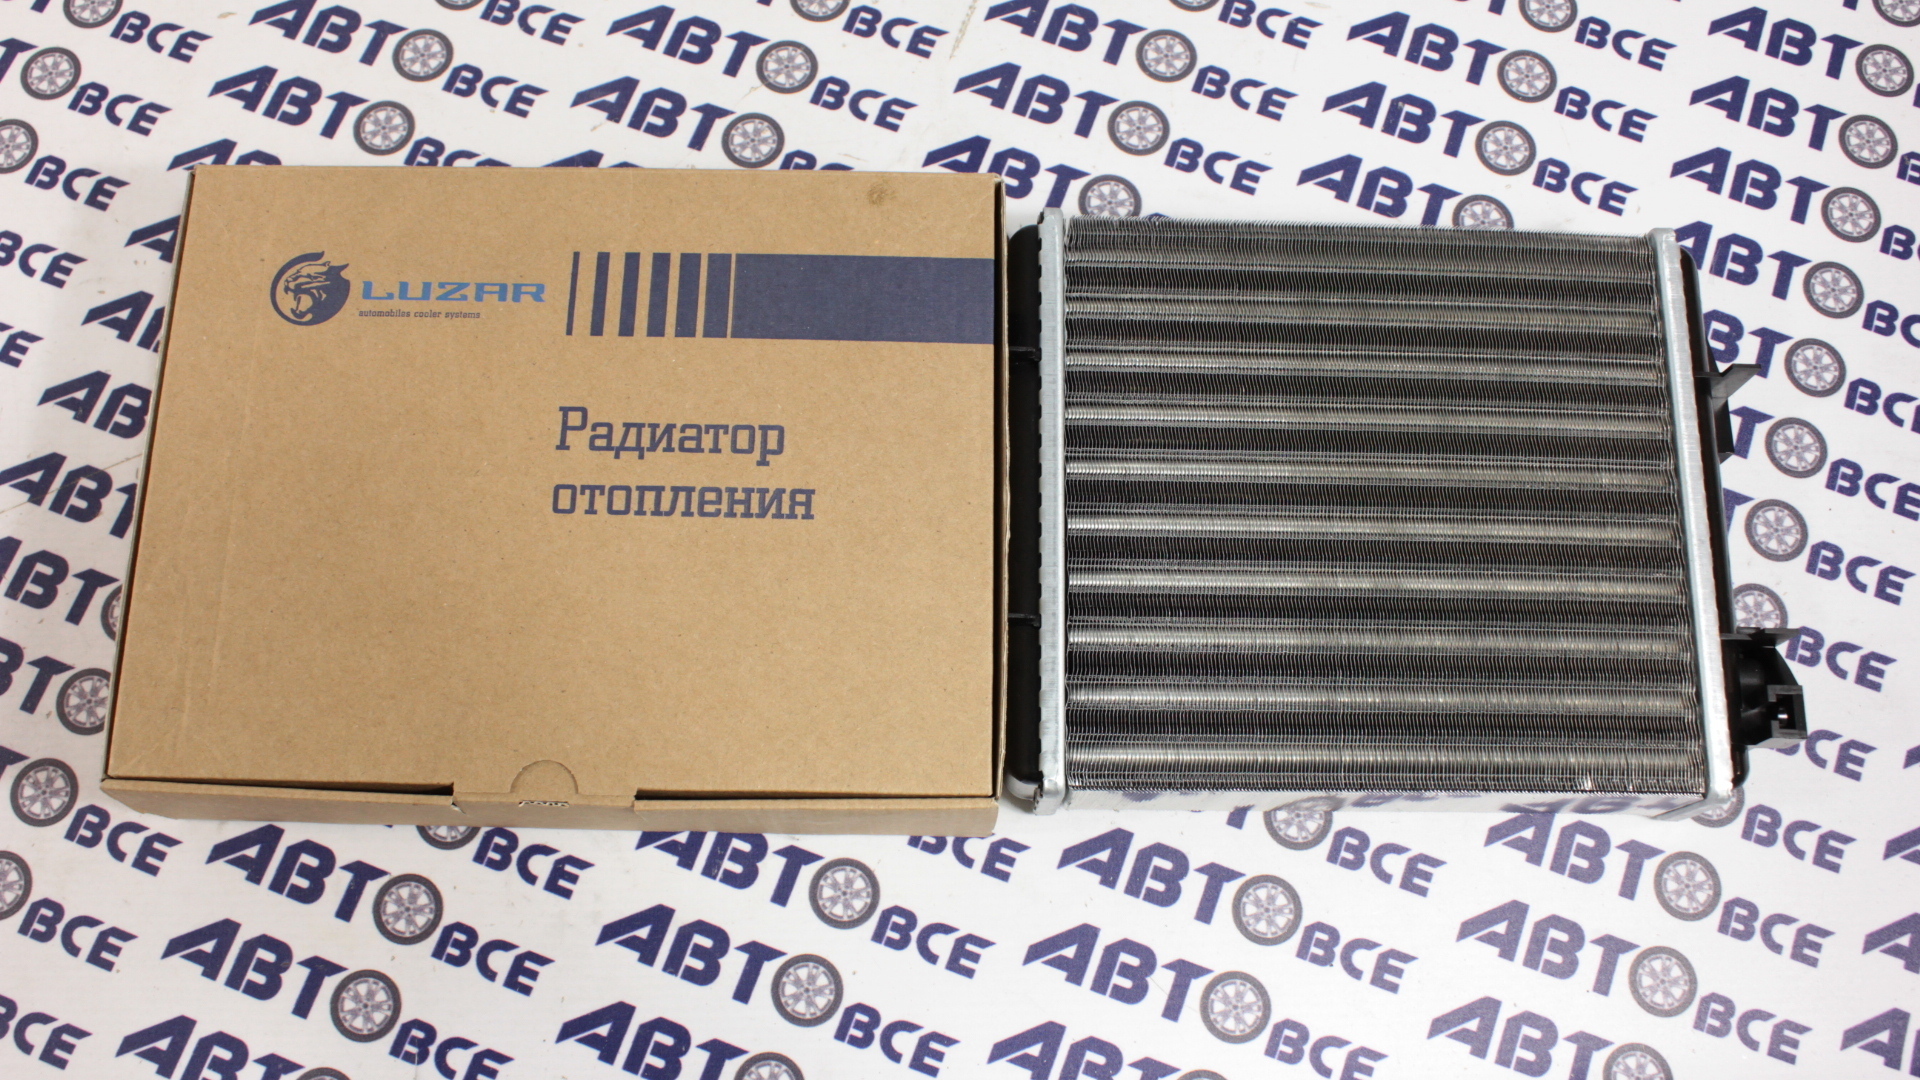 Радиатор отопителя (печки) ВАЗ-2105-2107 (алюминиевый -широкий) LUZAR